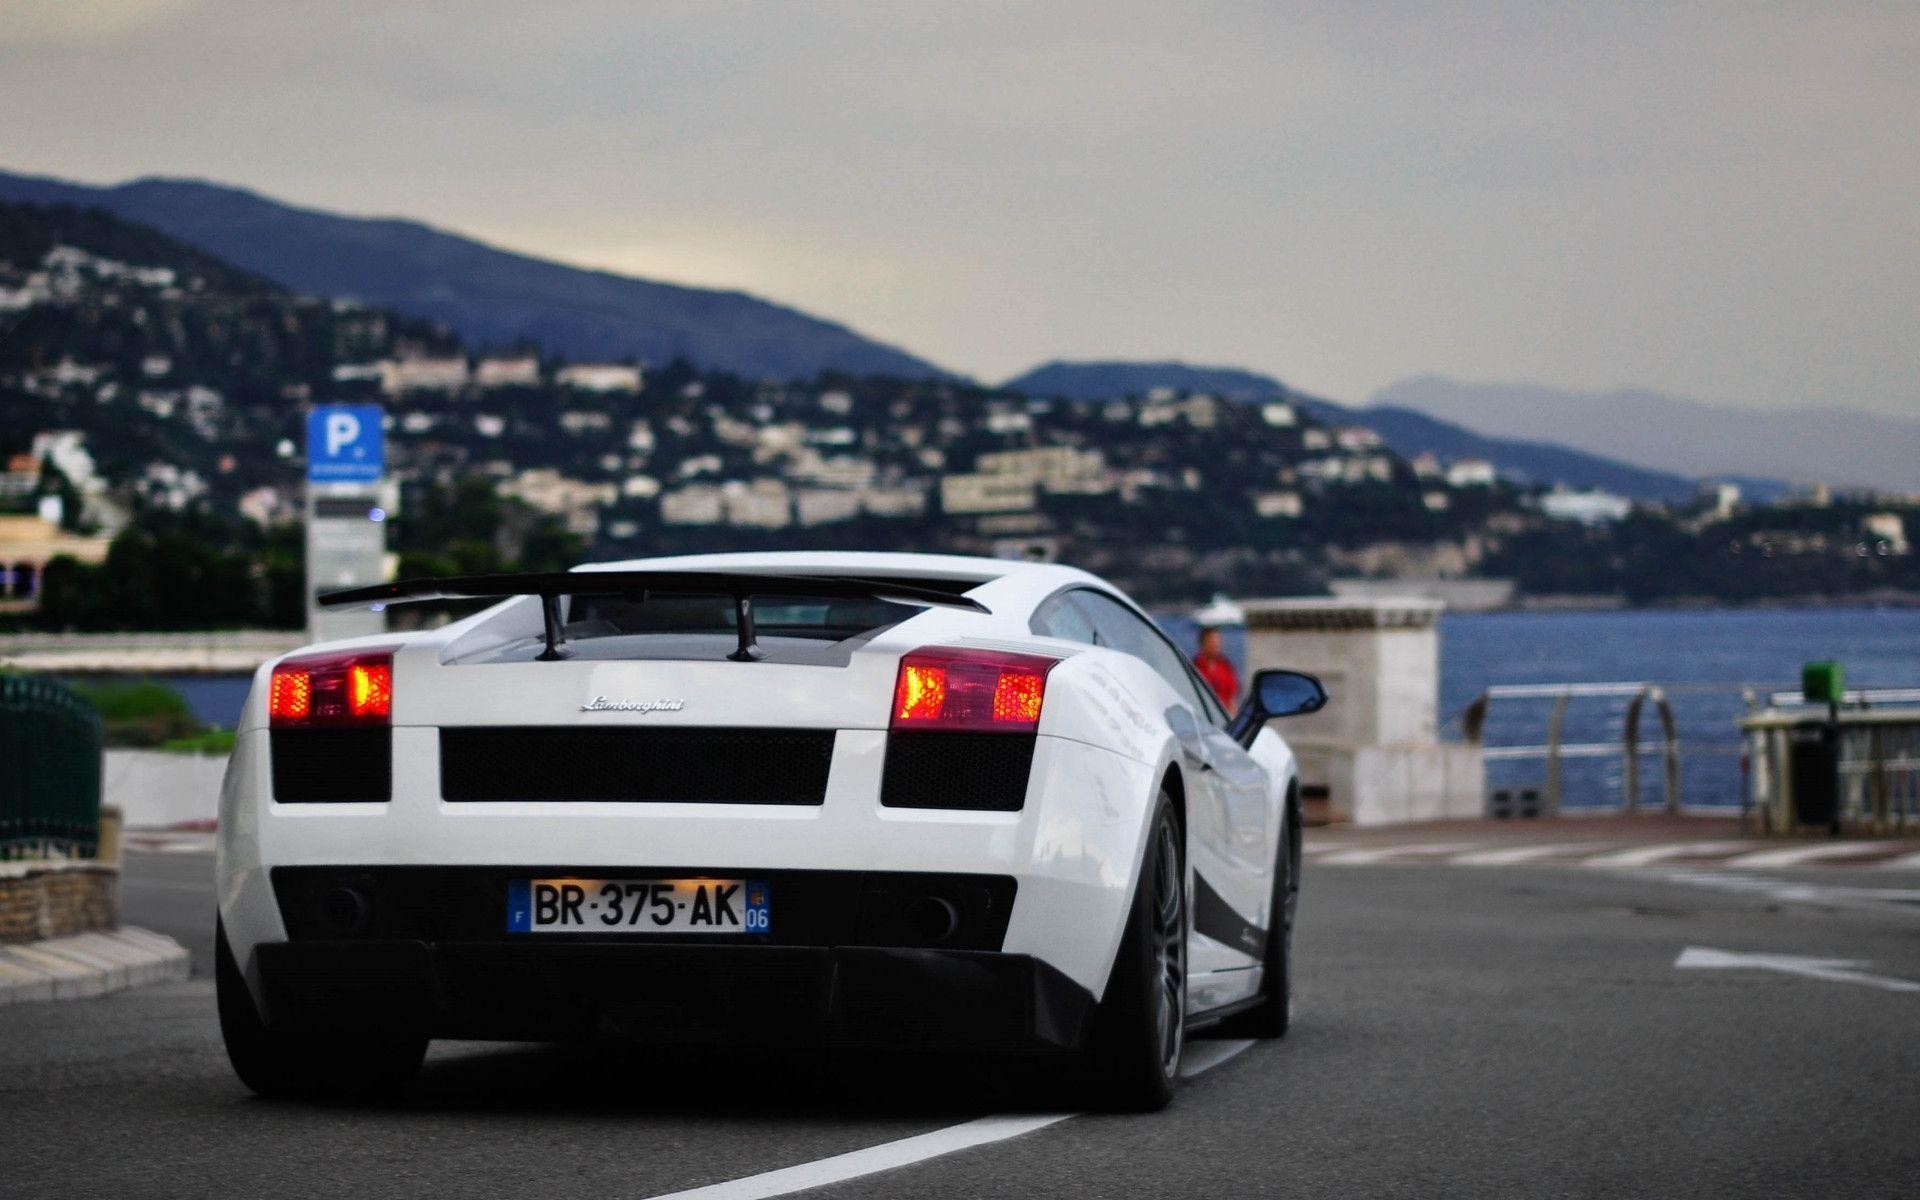 Lamborghini - Monte-carlo , HD Wallpaper & Backgrounds